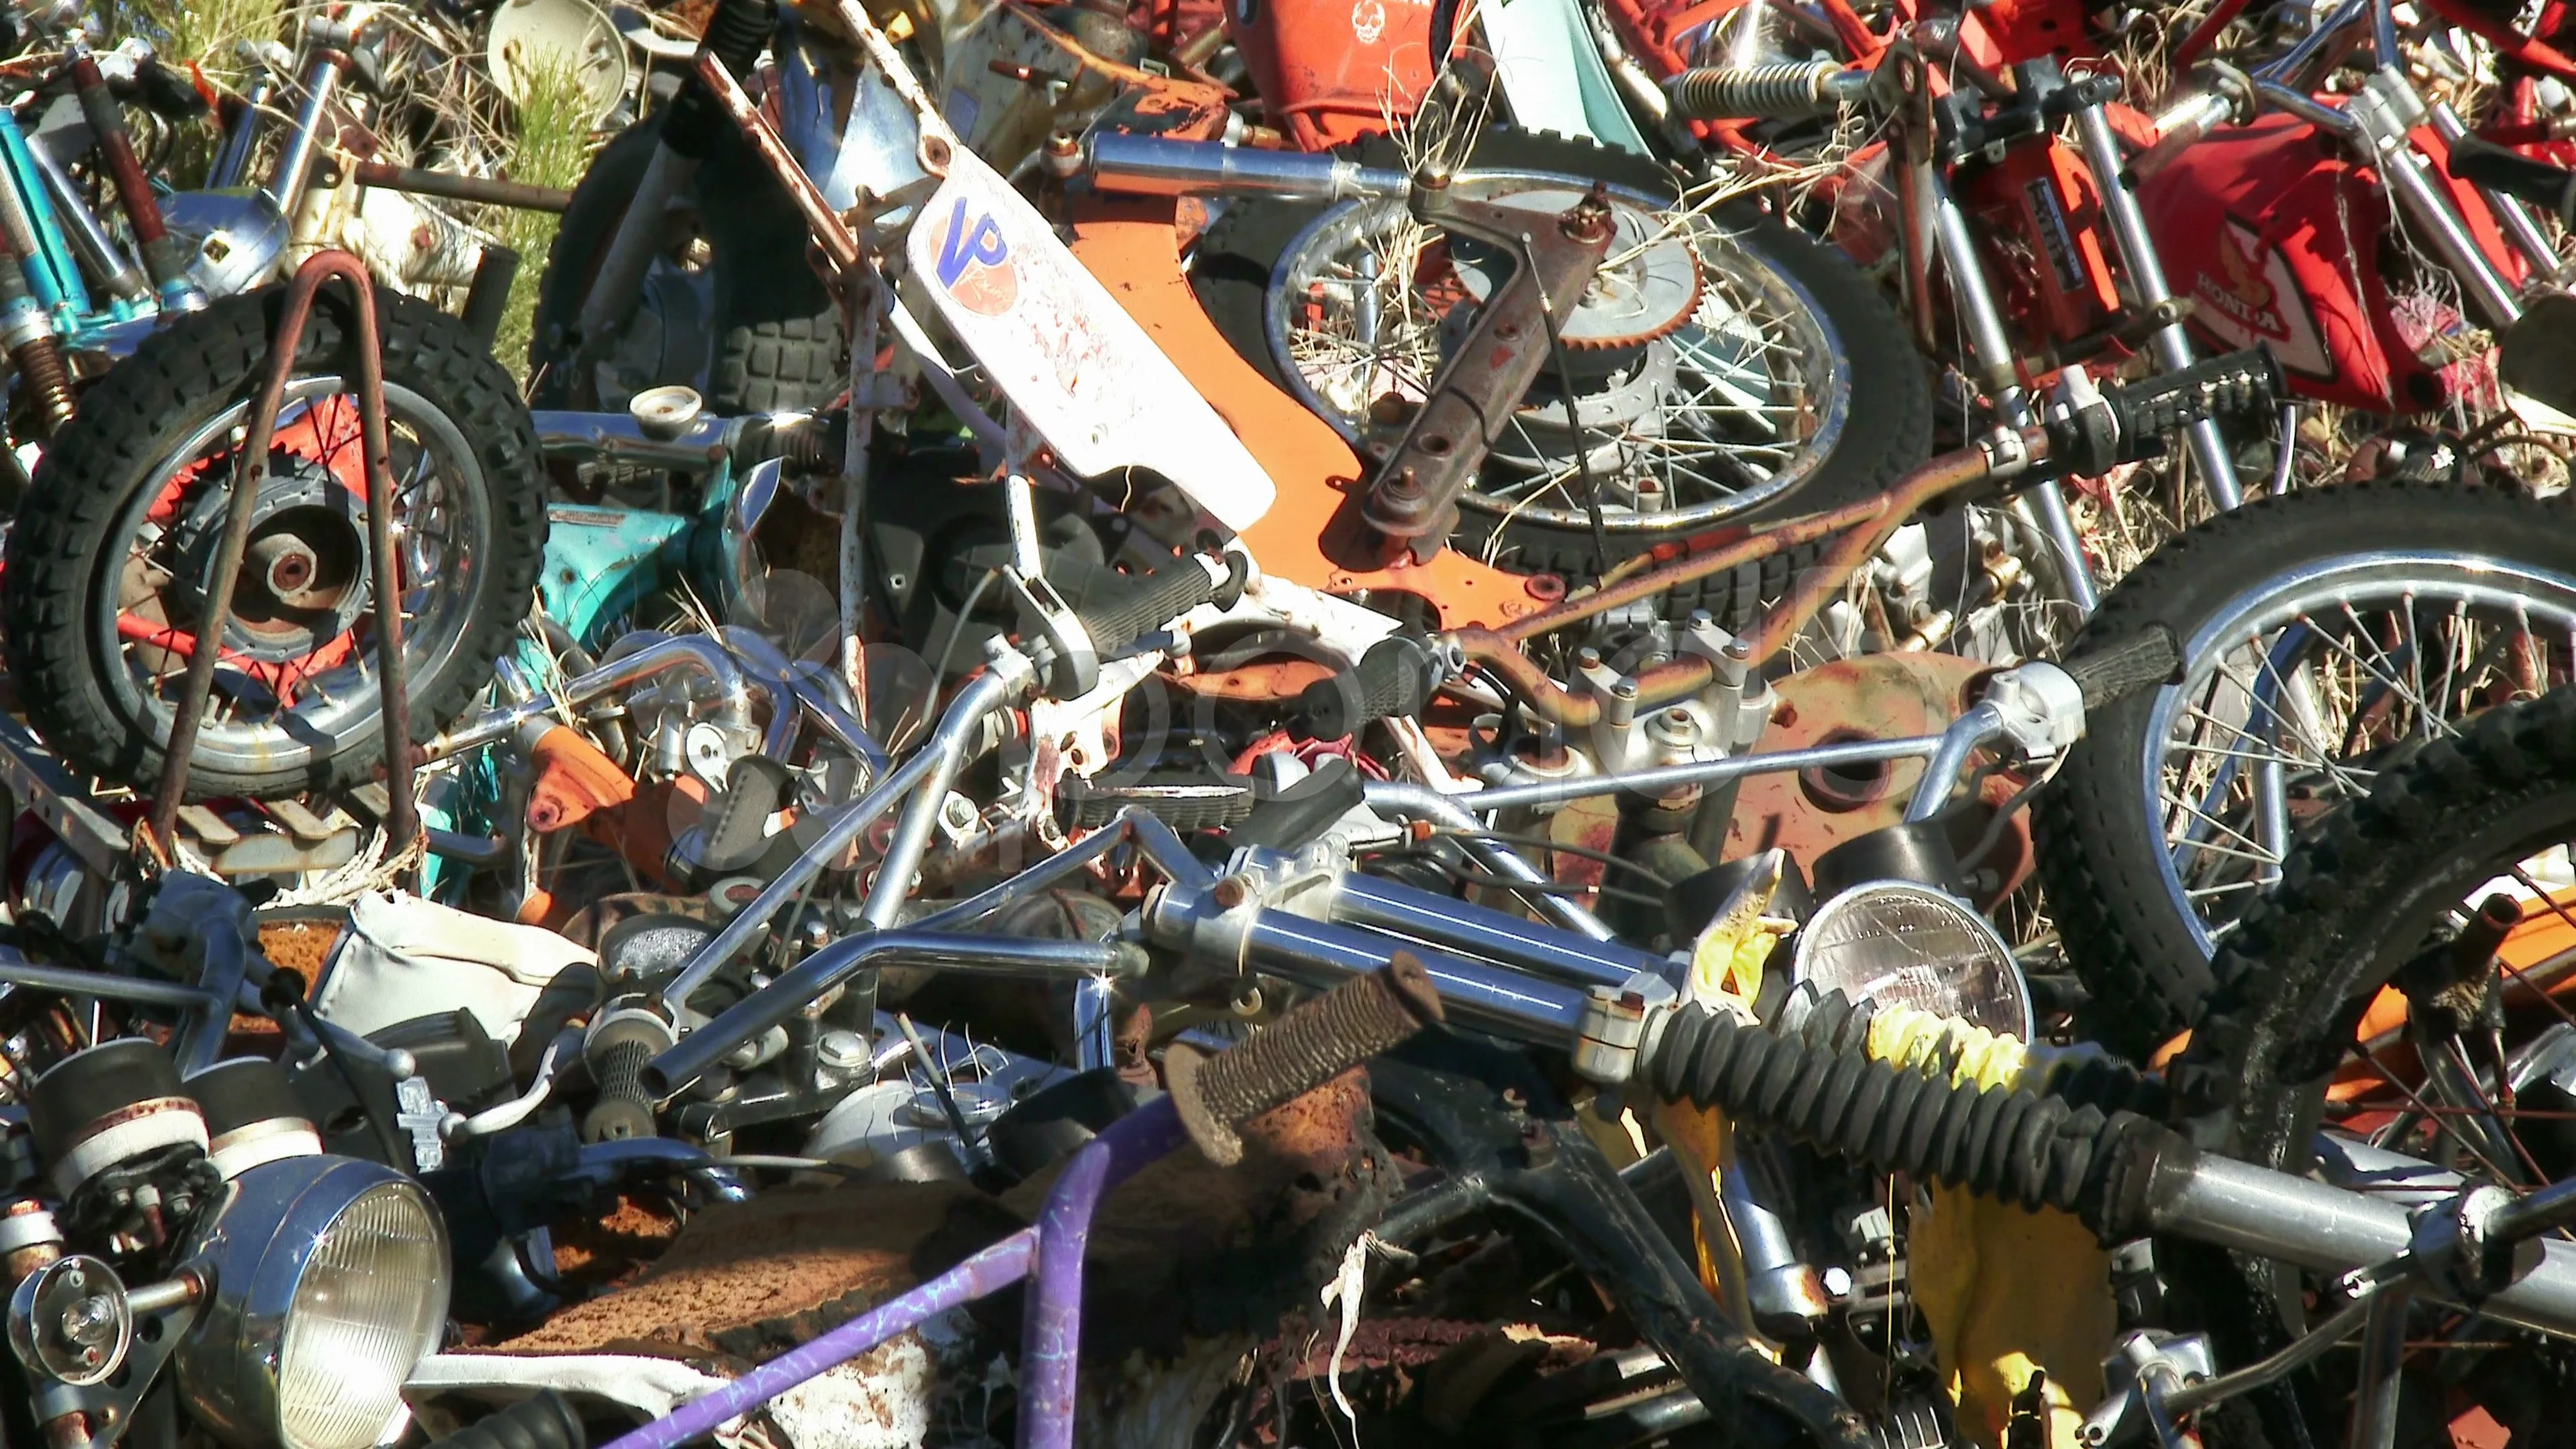 bike junkyard near me